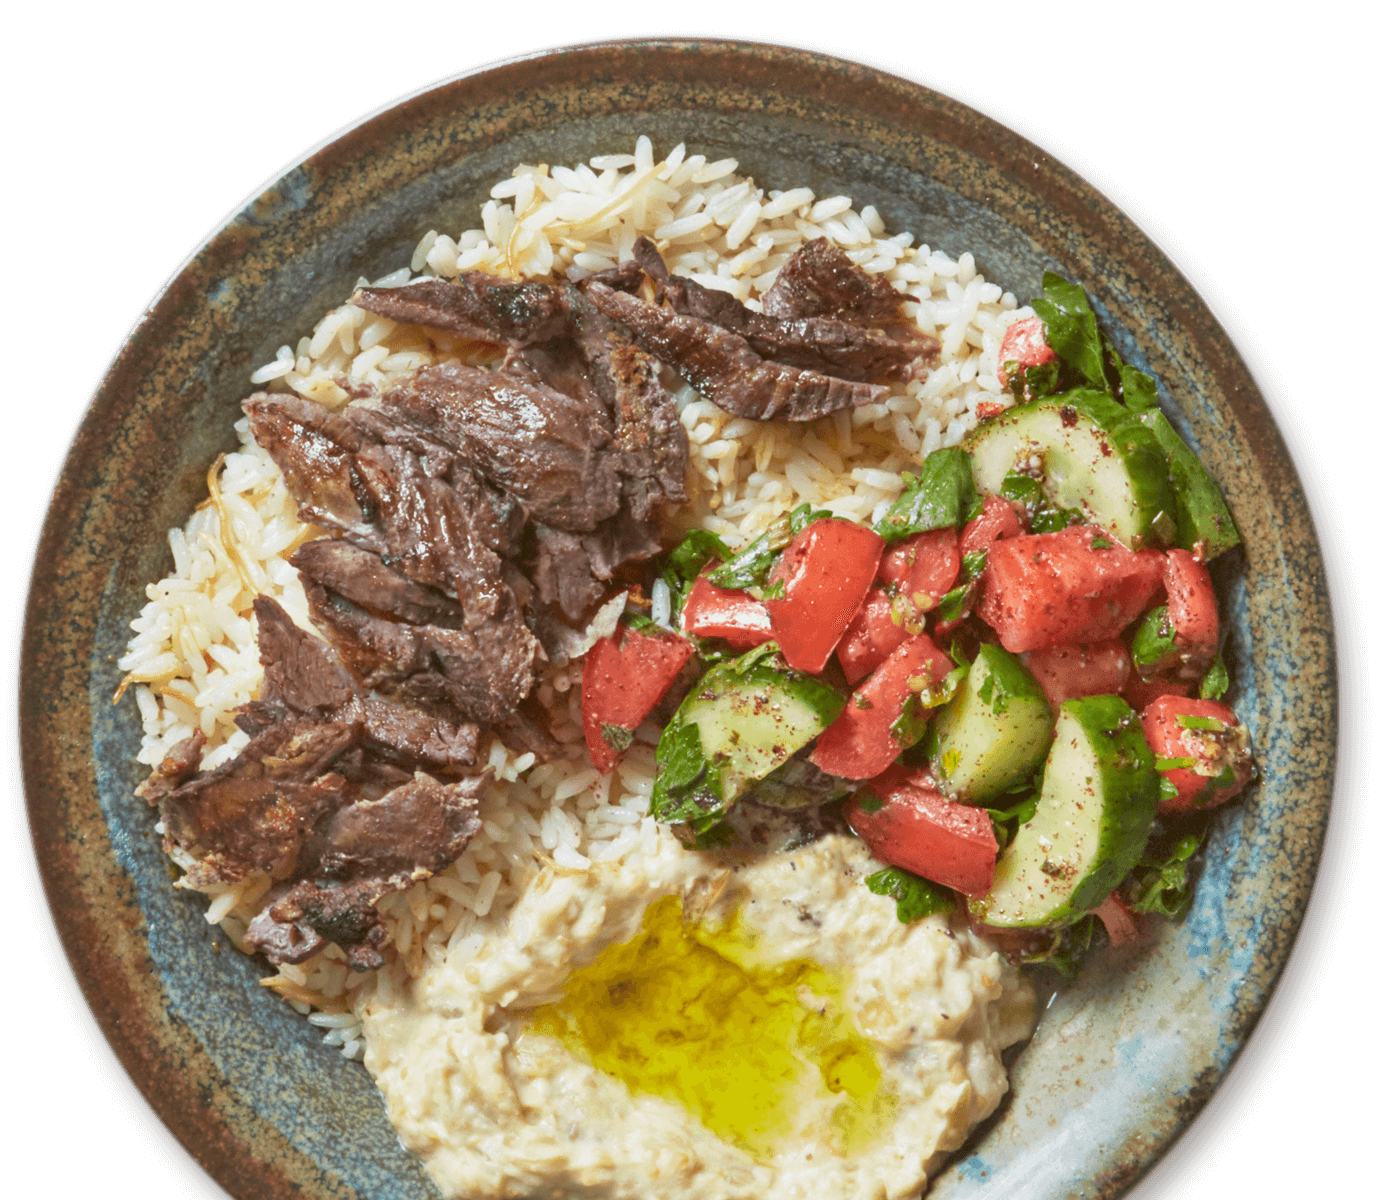 Catering near Boston - Lebanese Feast